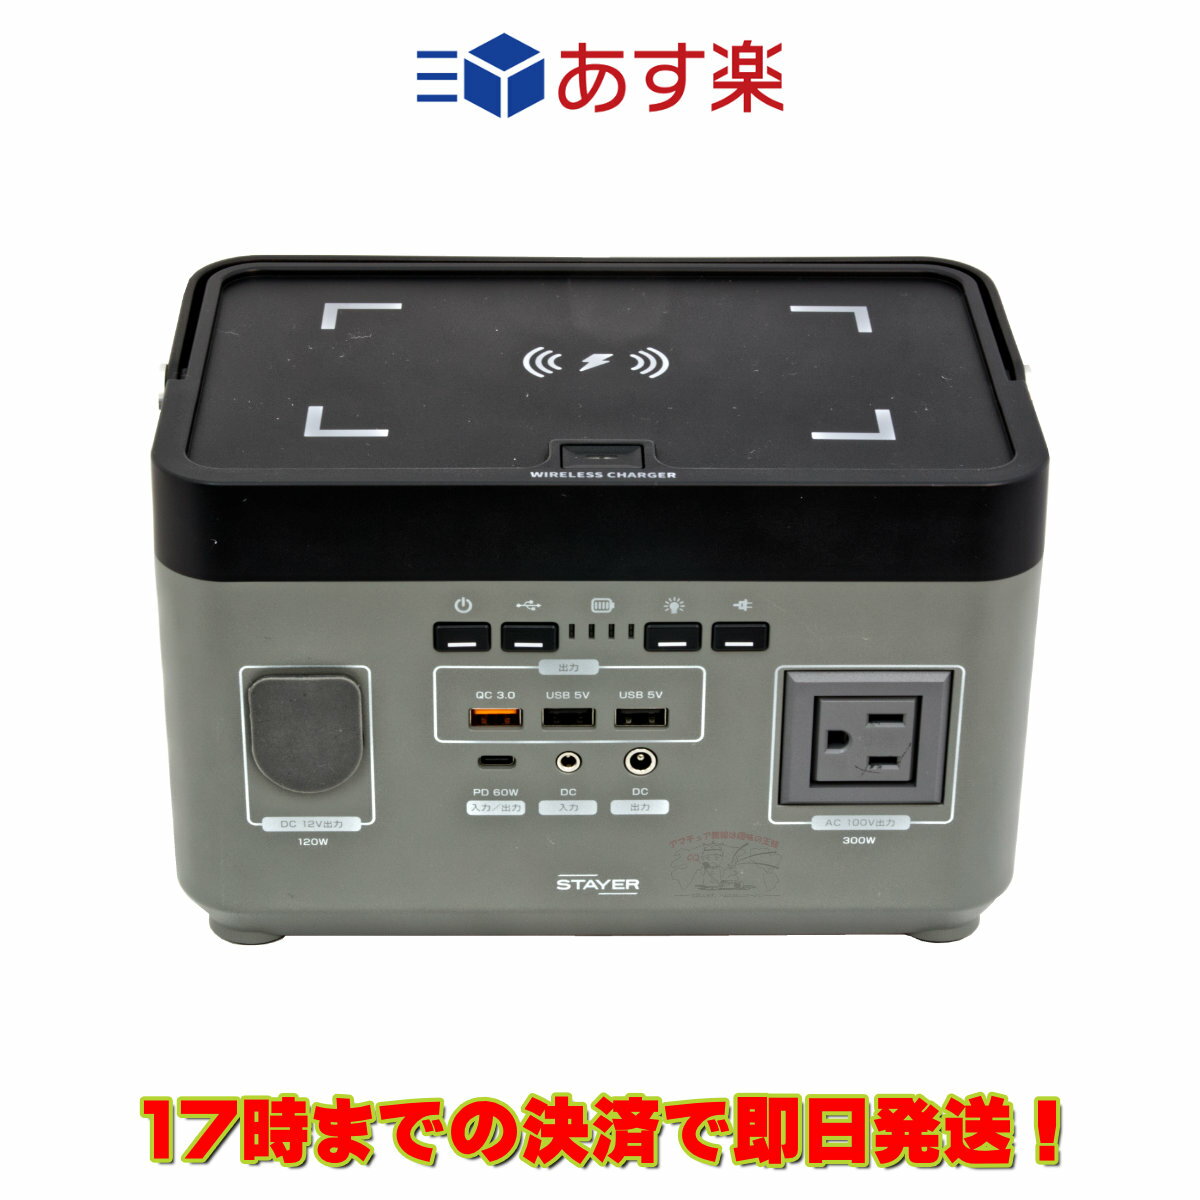 ST-POBTTY-300W-GL STAYER ワイヤレス充電搭載 ポータブル電源 正弦波 300W AC100V日本国内仕様（グレー）